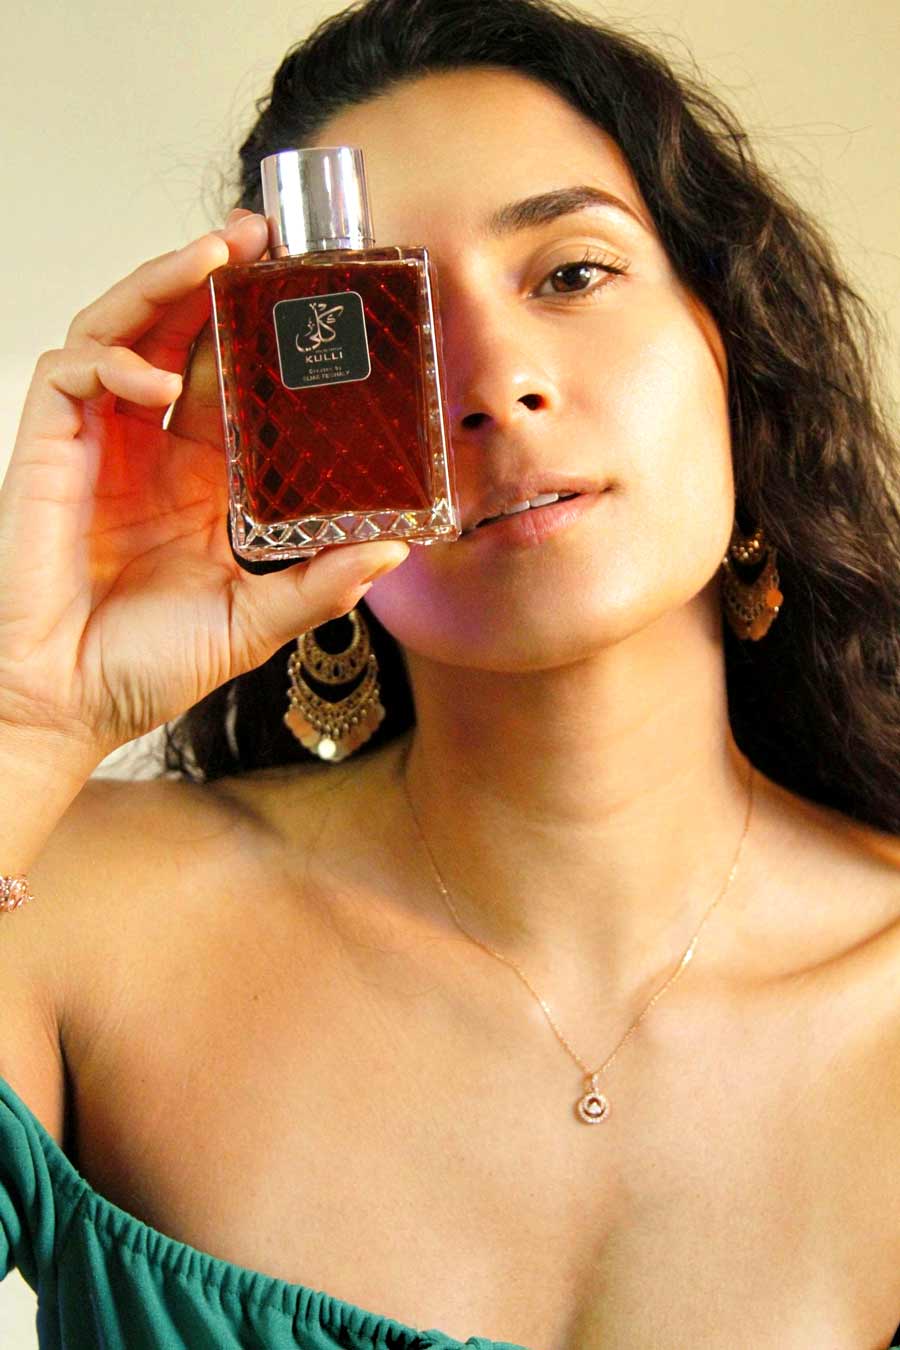 Headshot of woman holding perfume, Kulli Parfum, designed by Elias Feghaly.